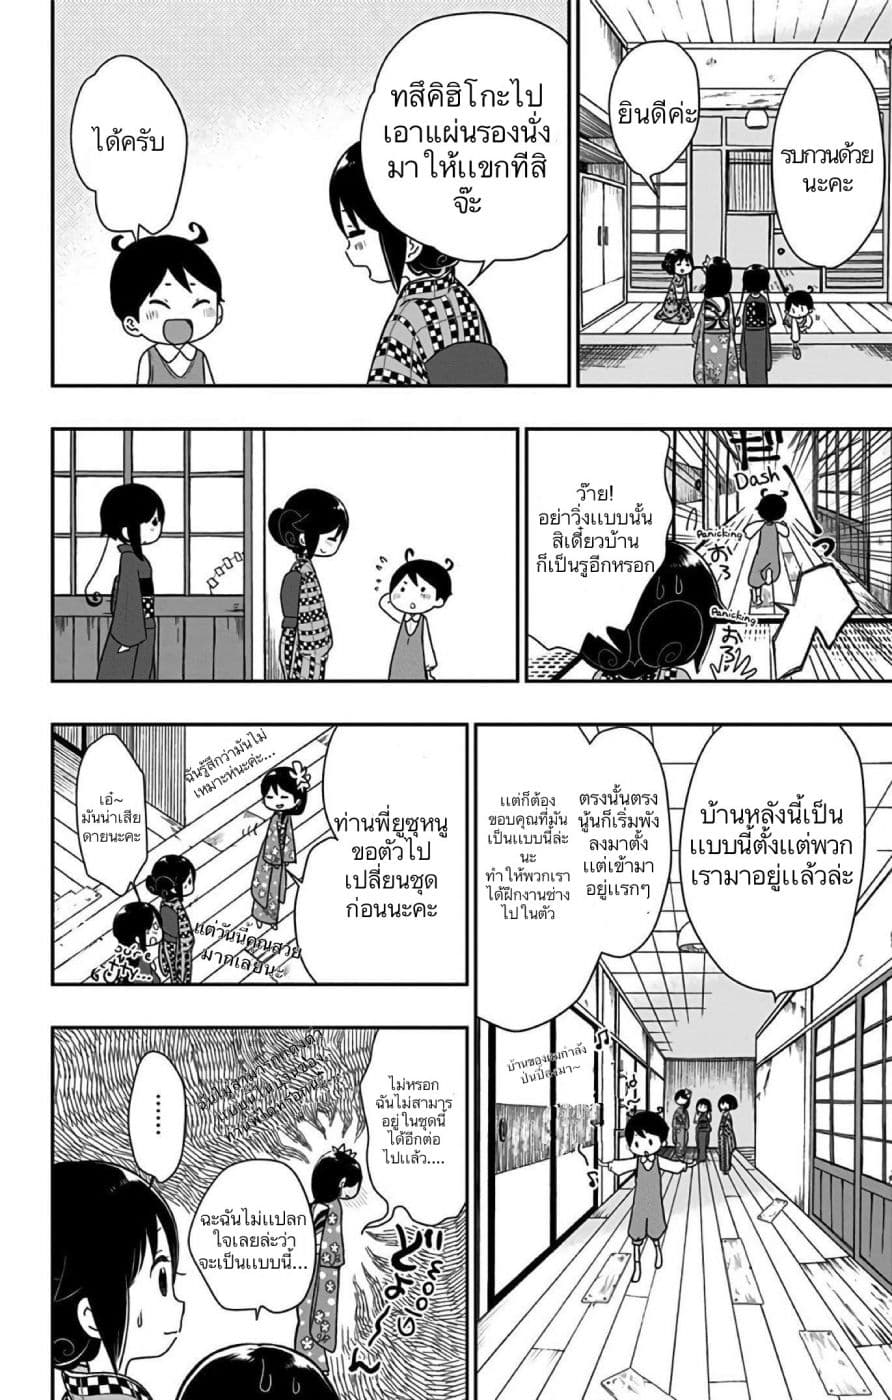 Shouwa Otome Otogibanashi เรื่องเล่าของสาวน้อย ยุคโชวะ ตอนที่ 16 (2)